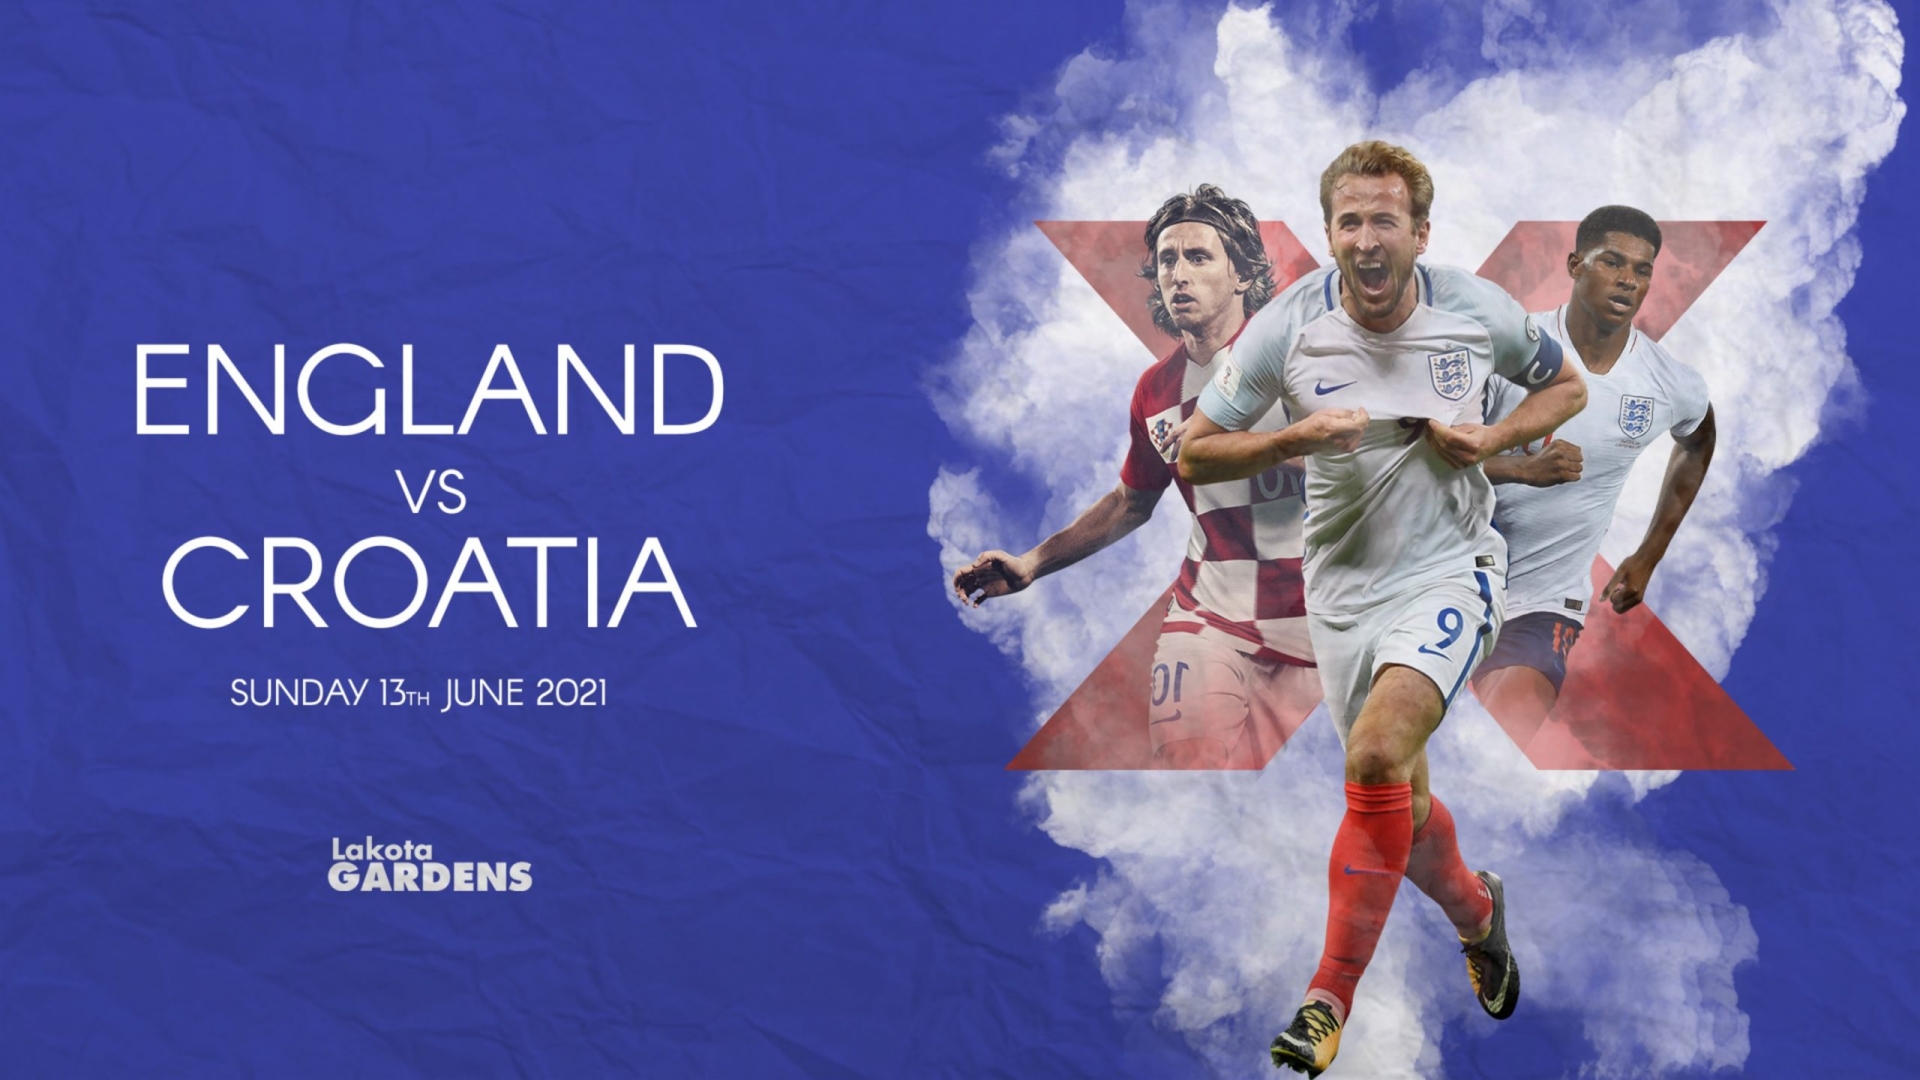 England v croatia